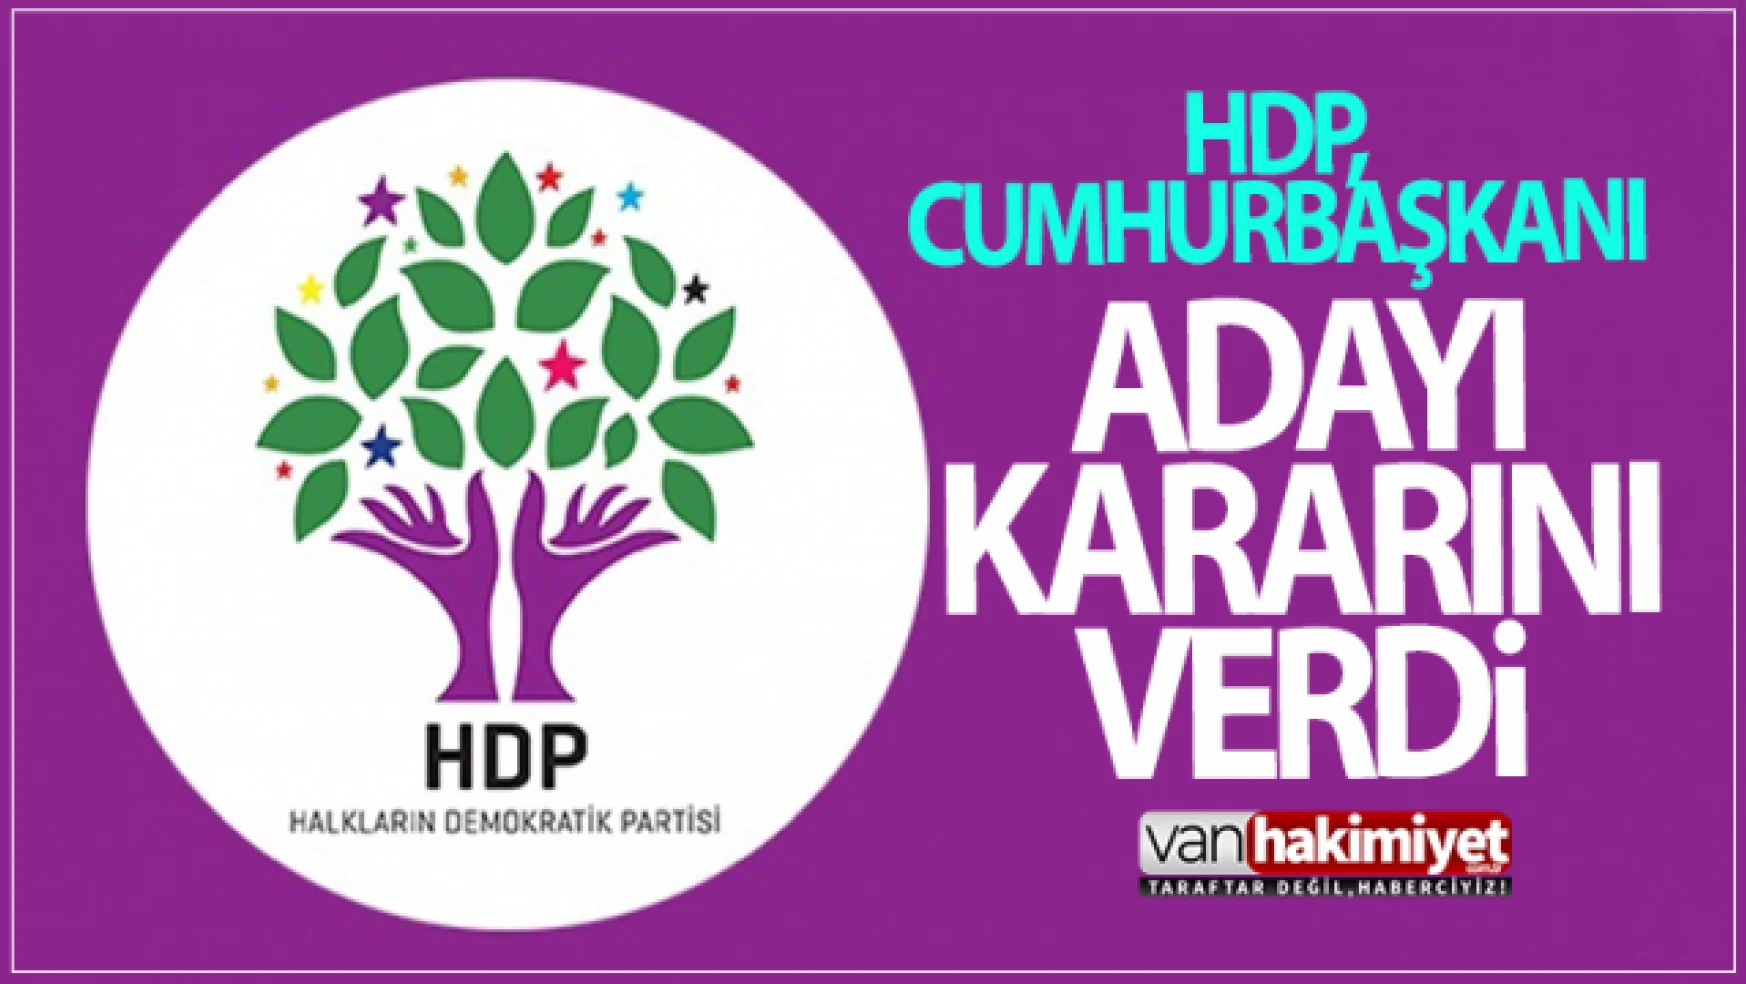 HDP, Cumhurbaşkanlığı adaylığı kararını verdi